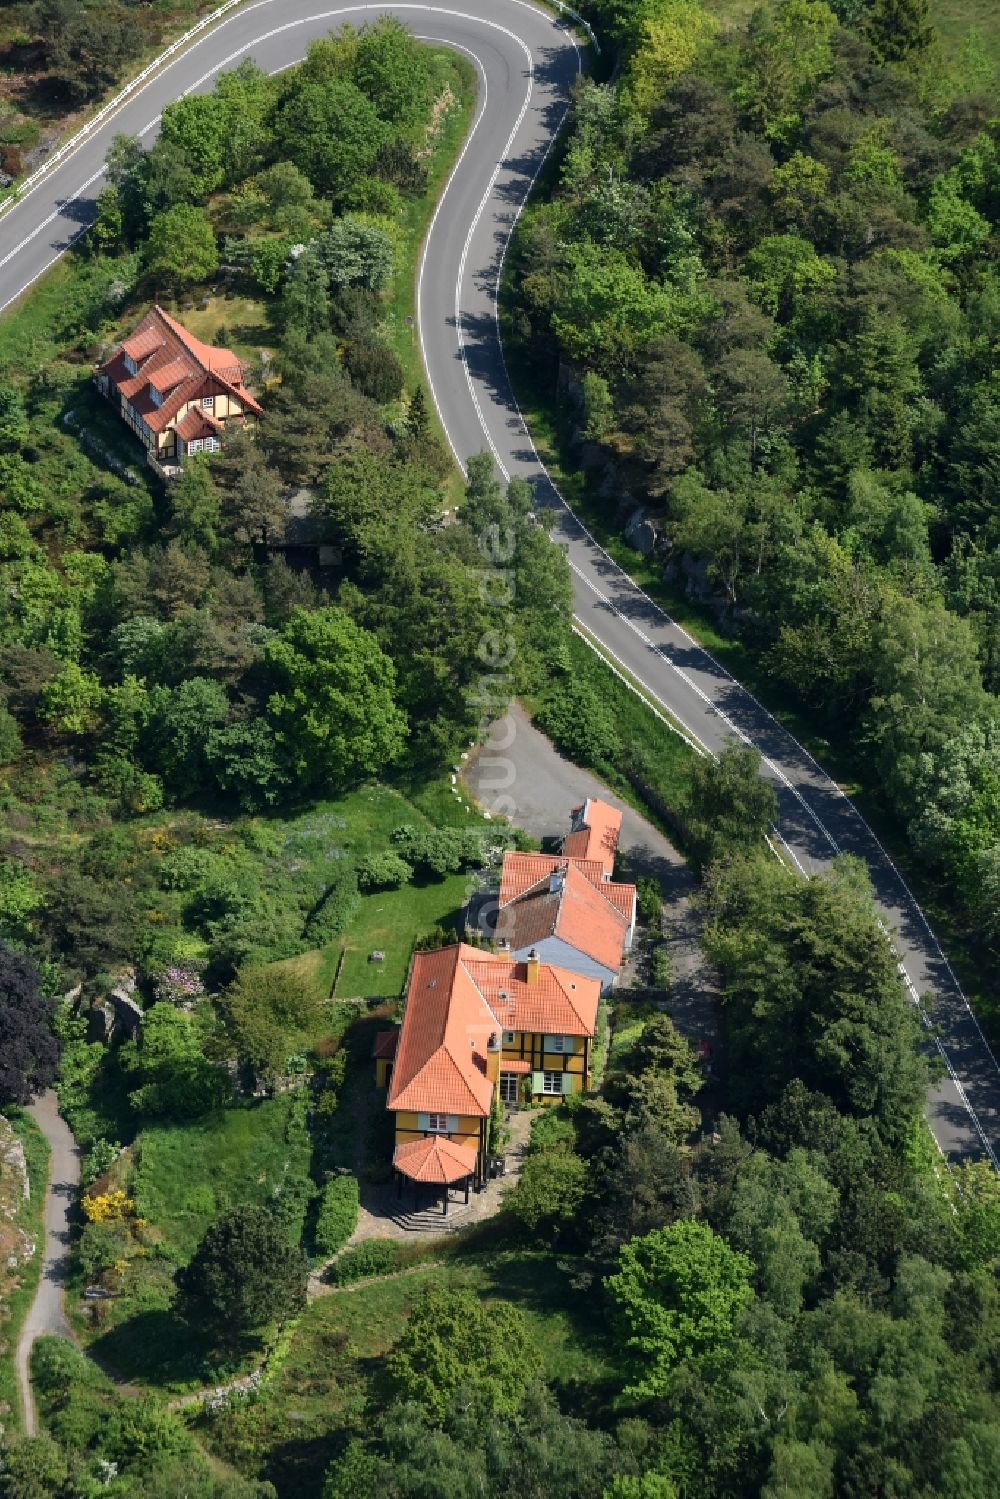 Luftbild Gudhjem - Serpentinenförmiger Kurvenverlauf der Straßenführung Norresand in Gudhjem in Region Hovedstaden, Dänemark